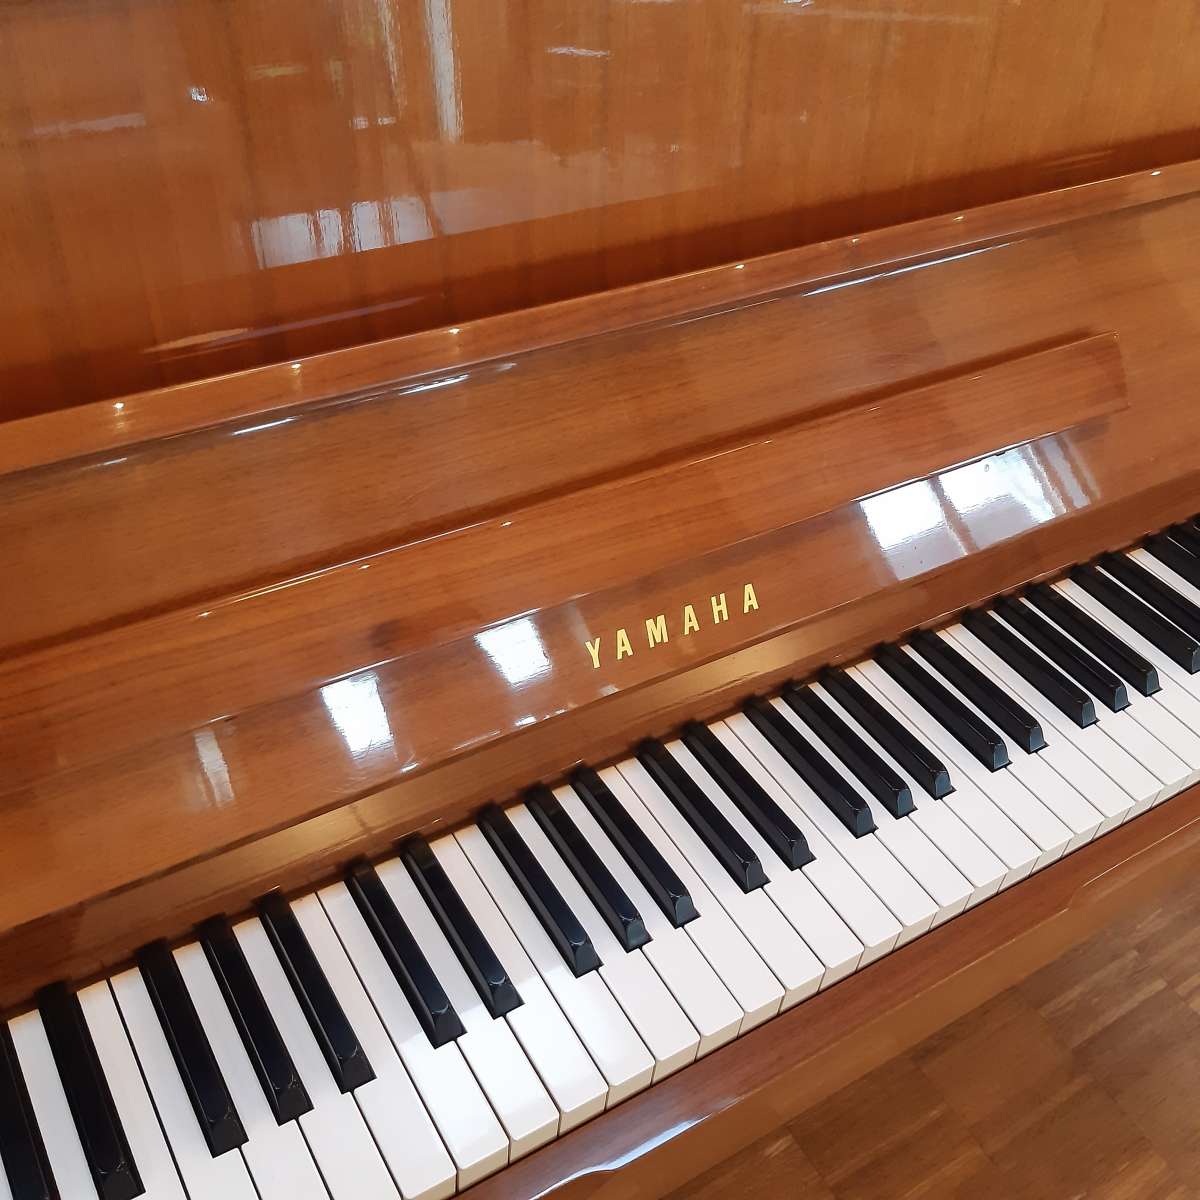 Yamaha Klavier Nussbaum poliert